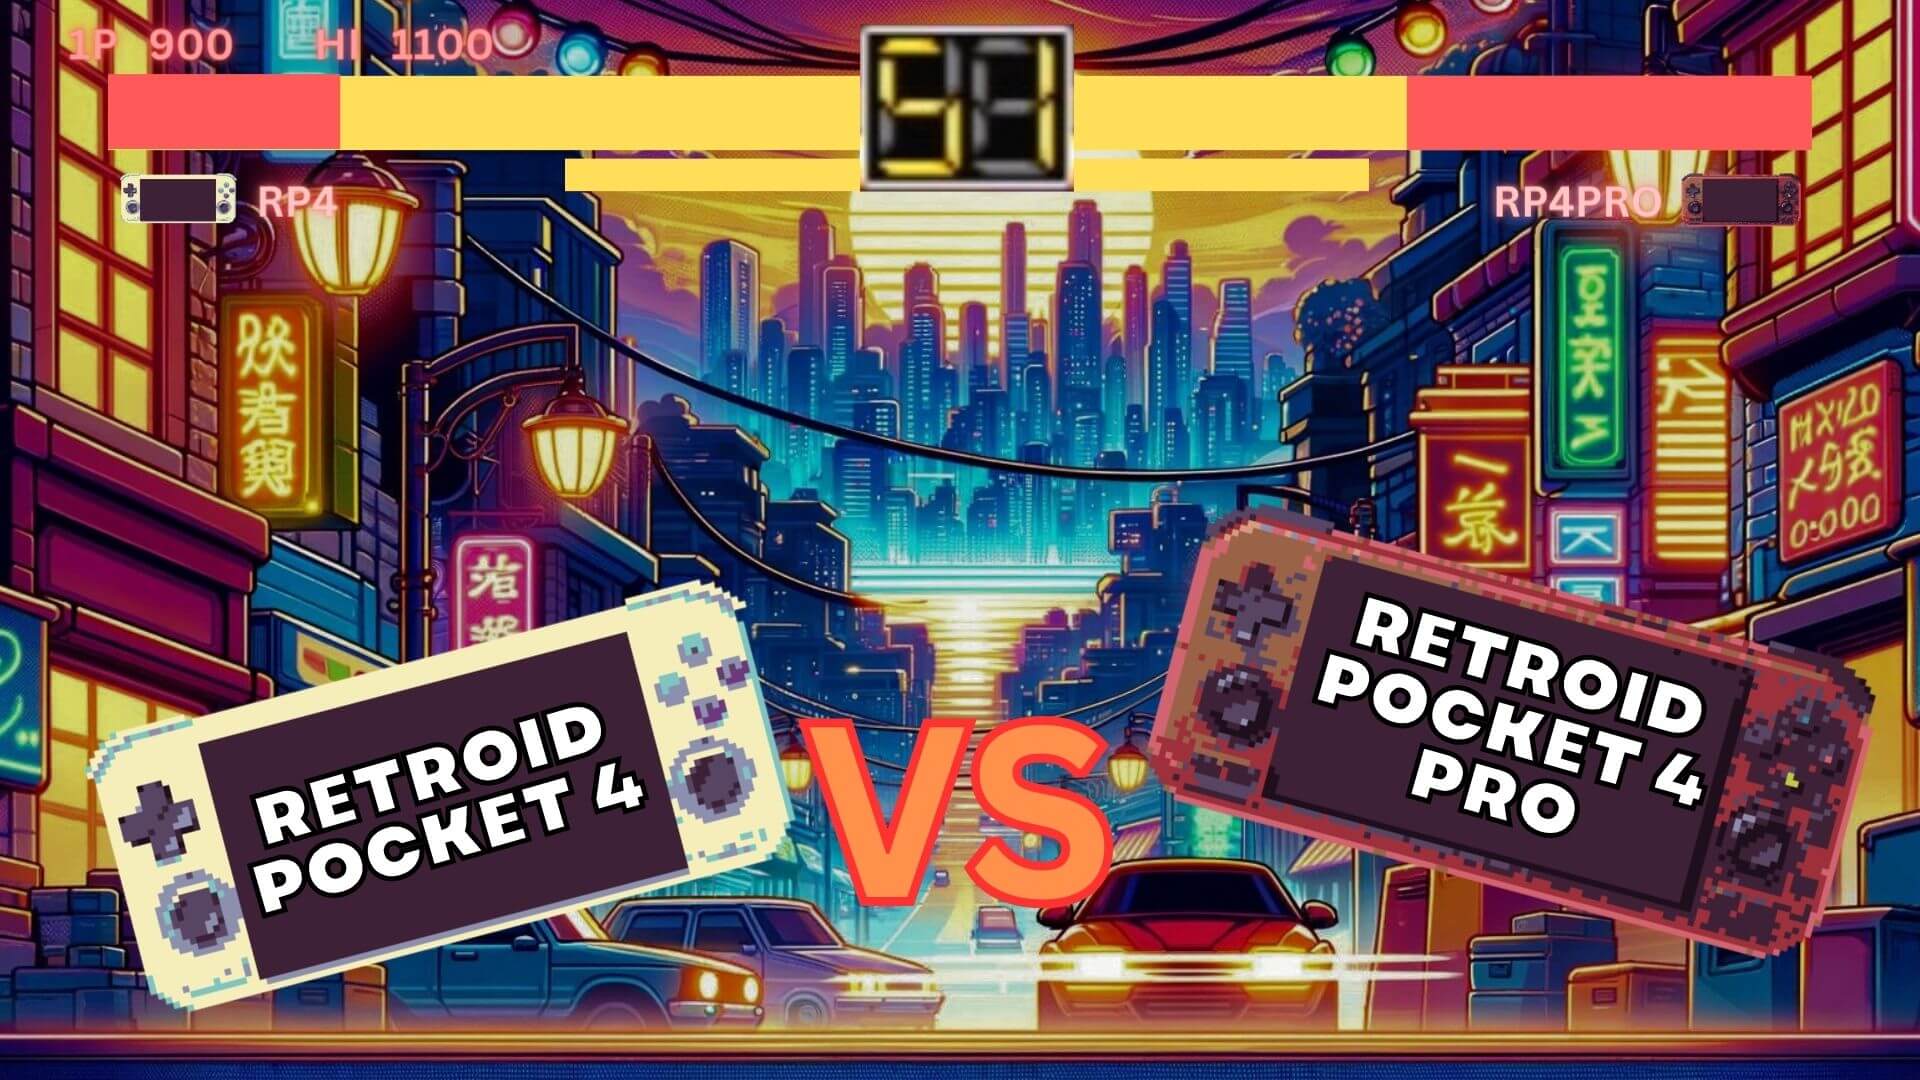 Retroid Pocket 4 vs Retroid Pocket  4 PRO con video - Qual è il miglior rapporto tra prezzo e prestazioni?